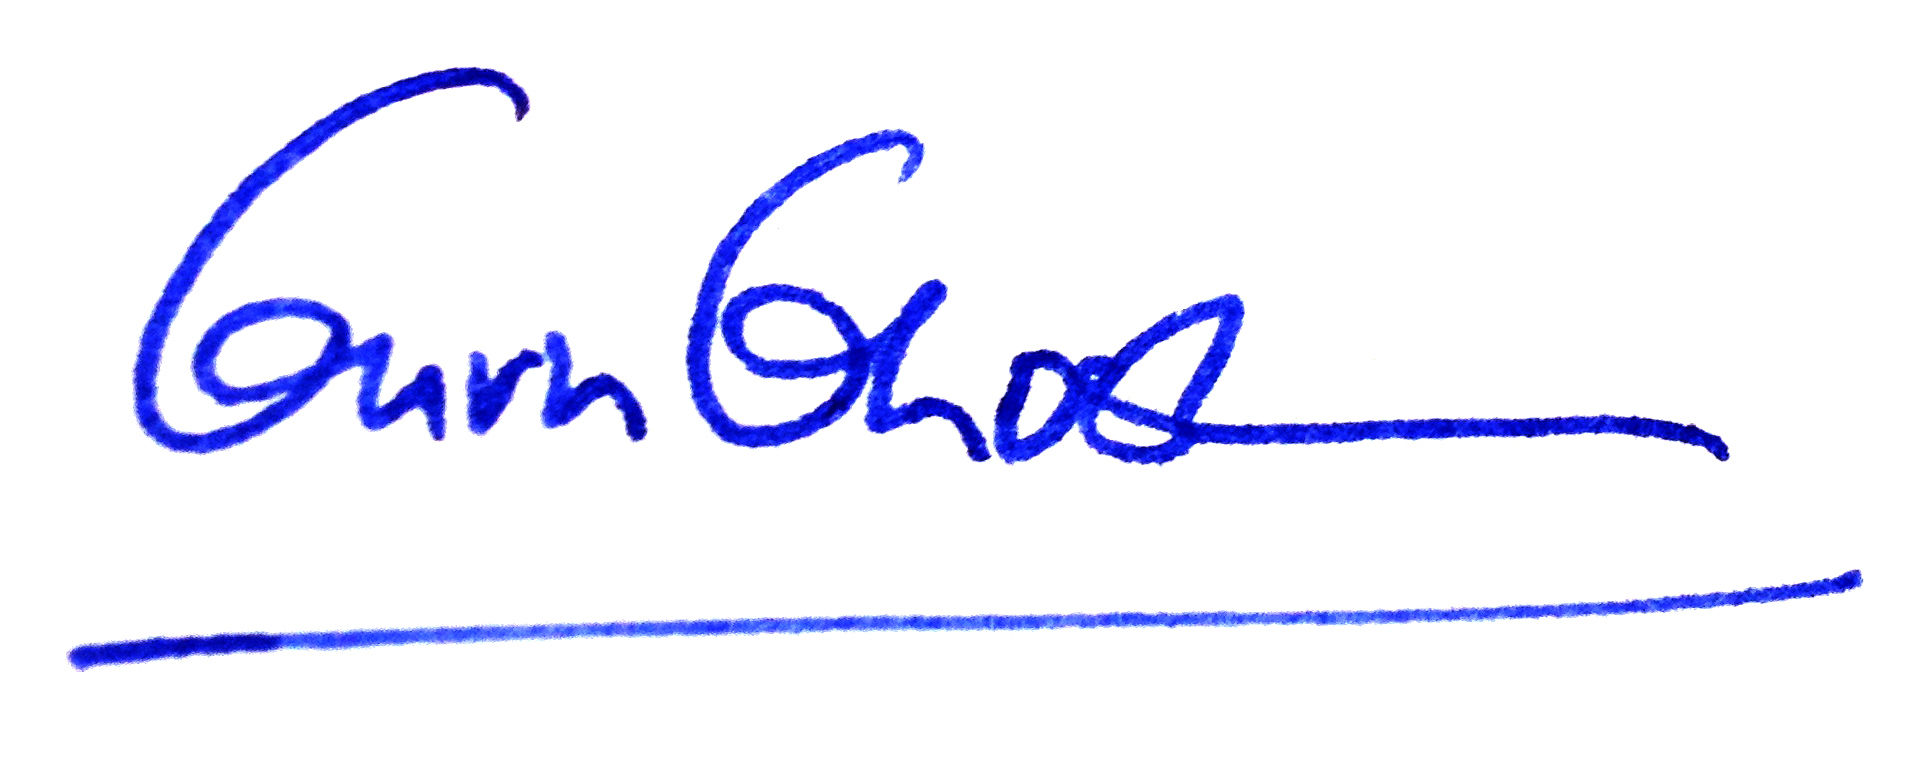 Guru Ghosh signature